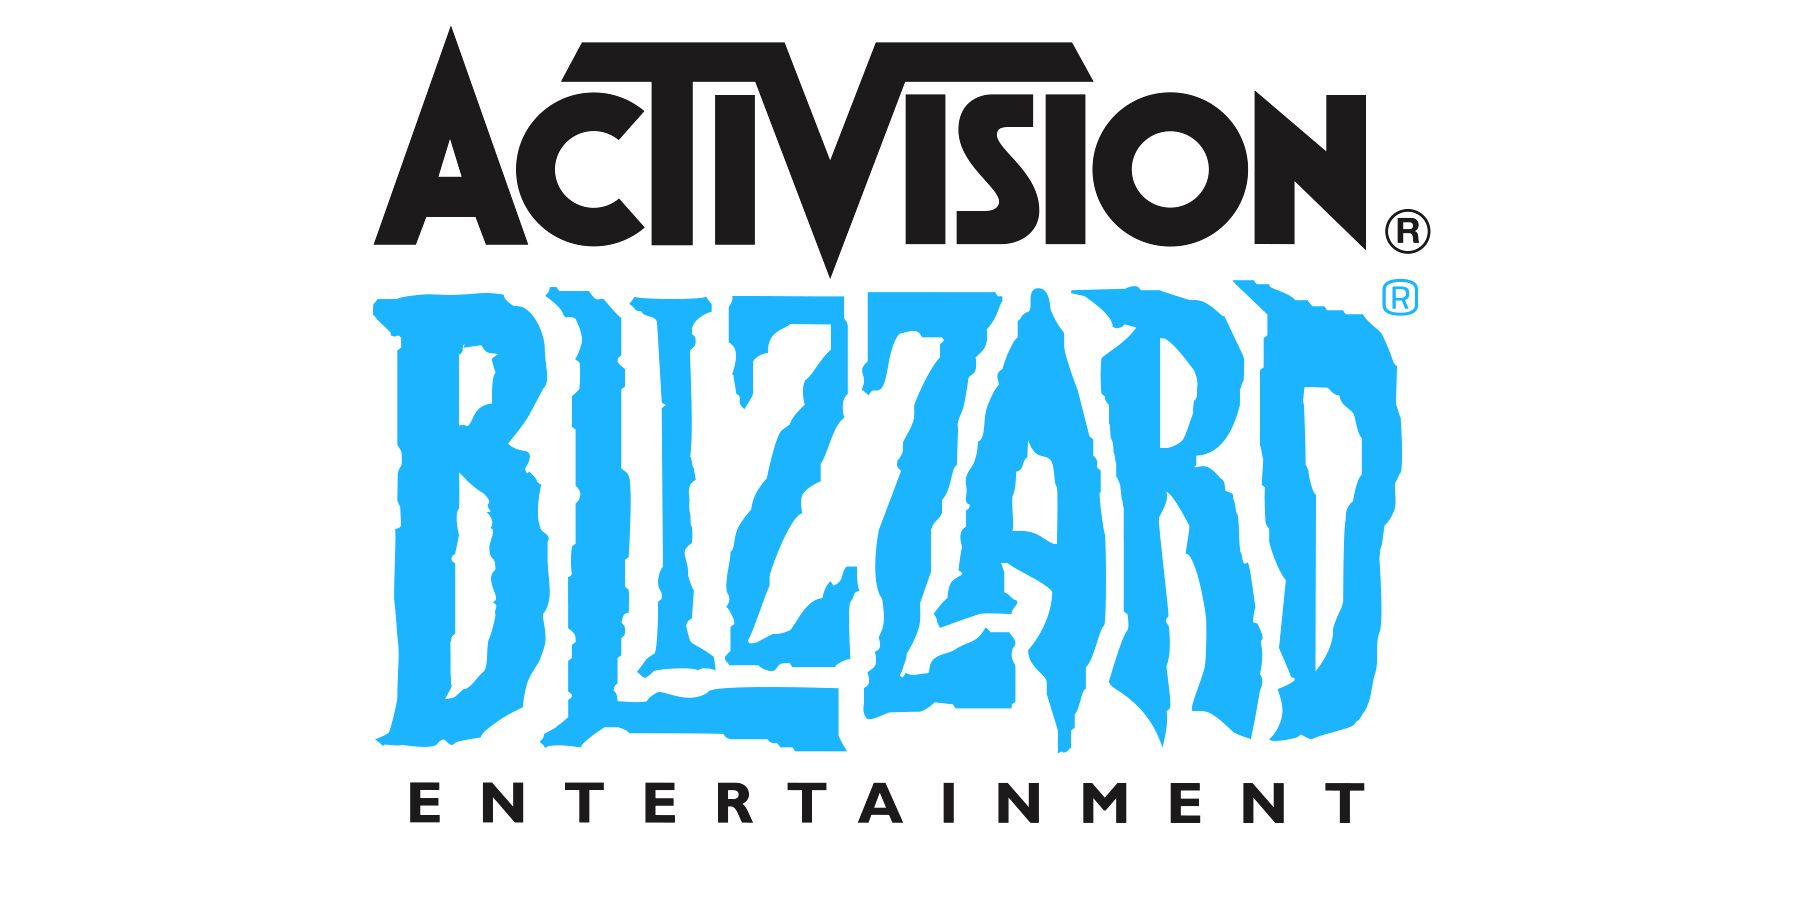 Activision Blizzard Entertainment logos on white background